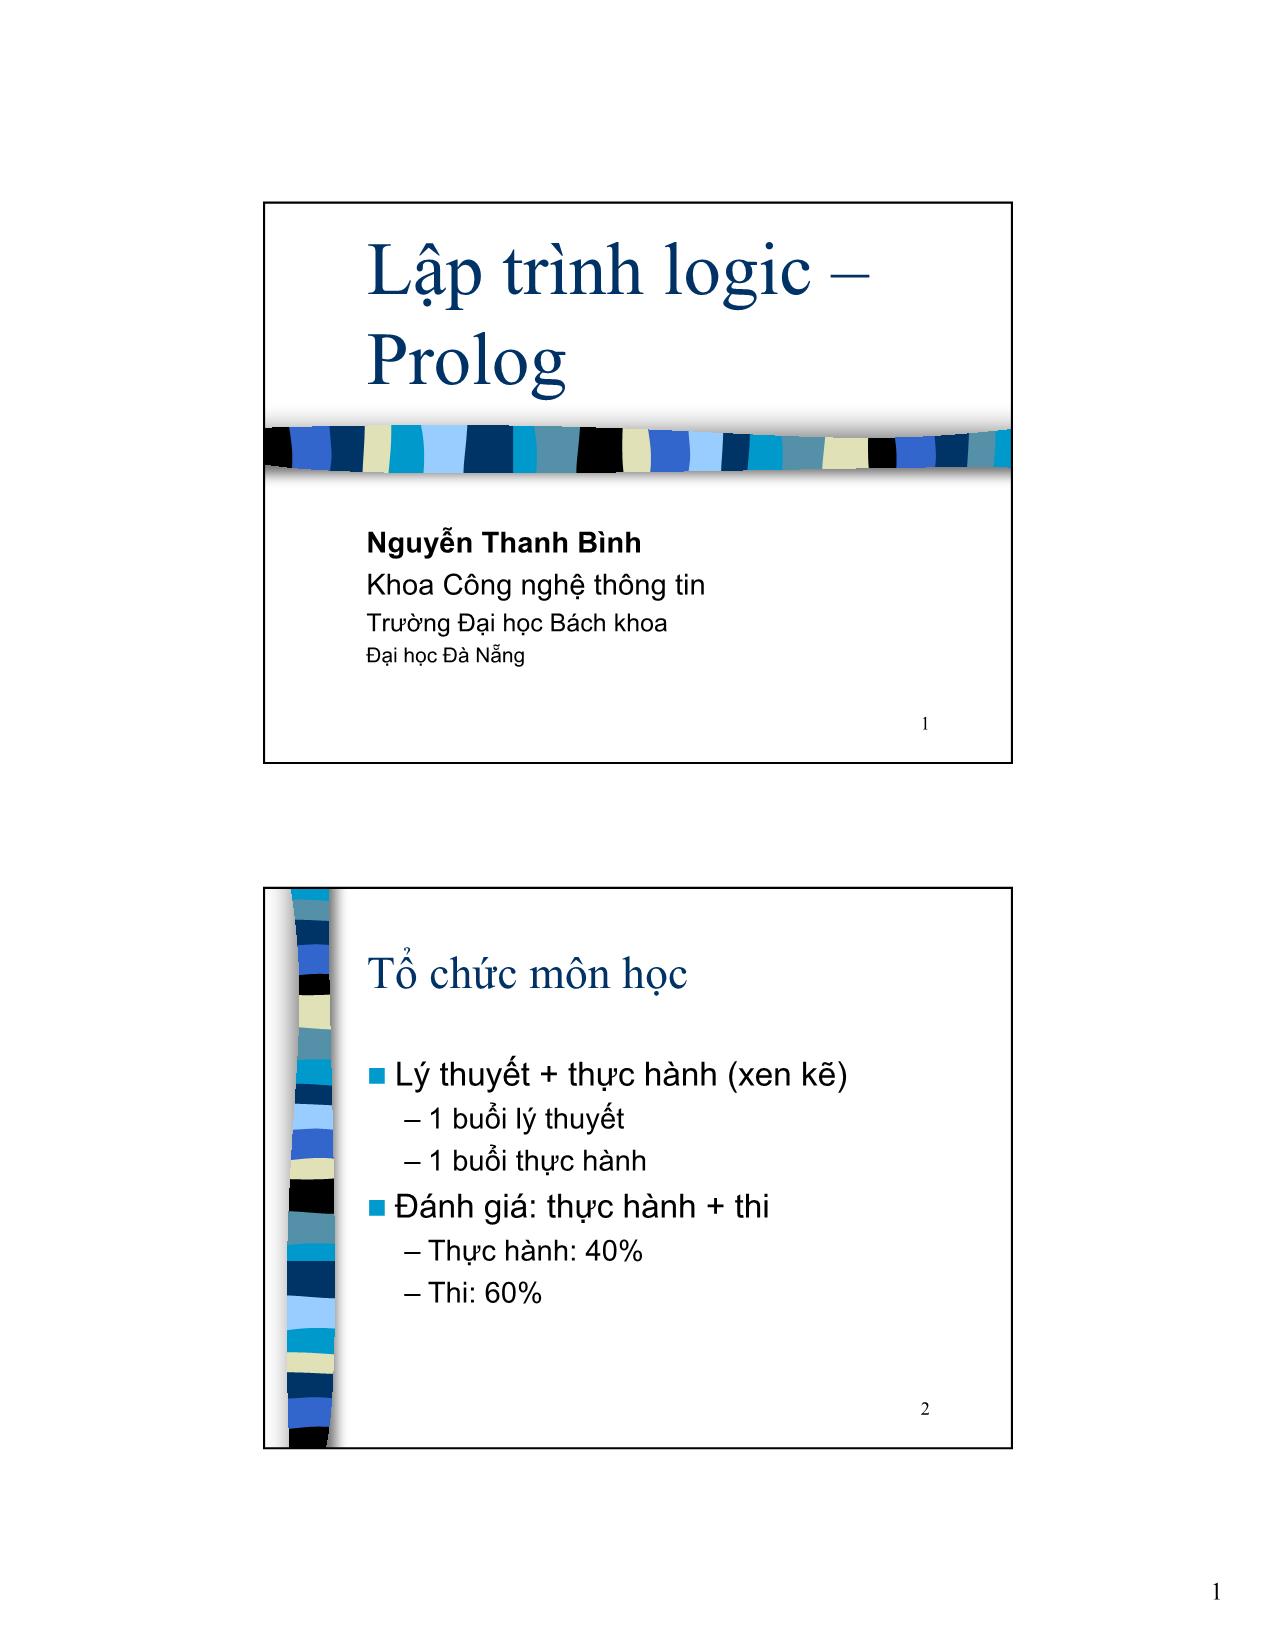 Lập trình logic Prolog trang 1